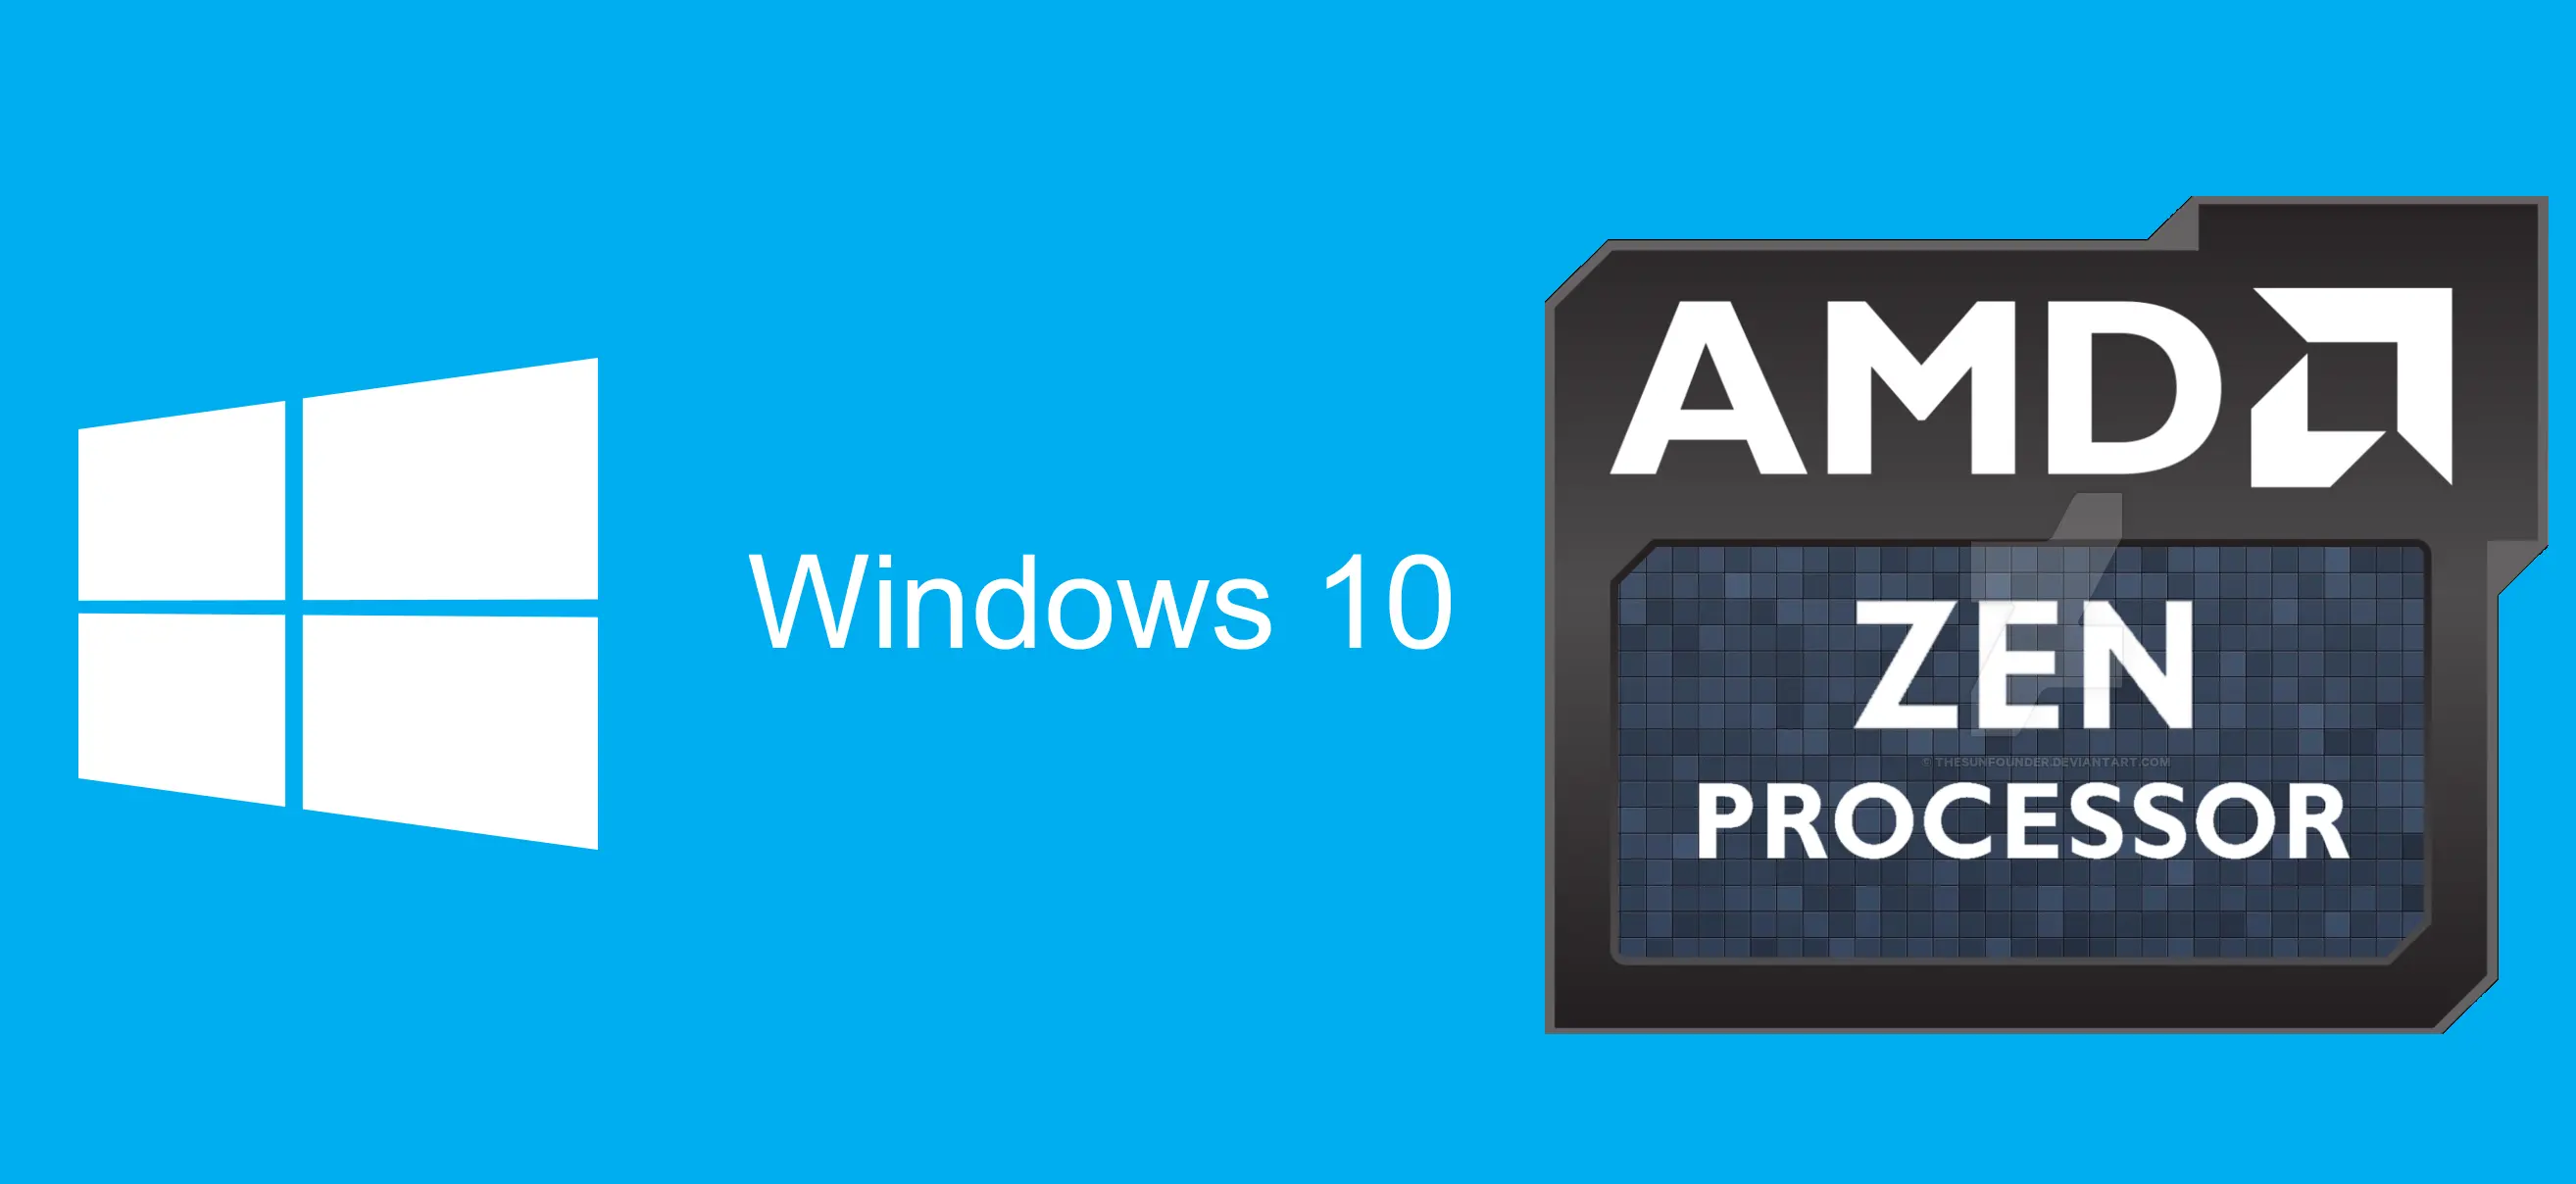 AMD Zen solamente será compatible con Windows 10